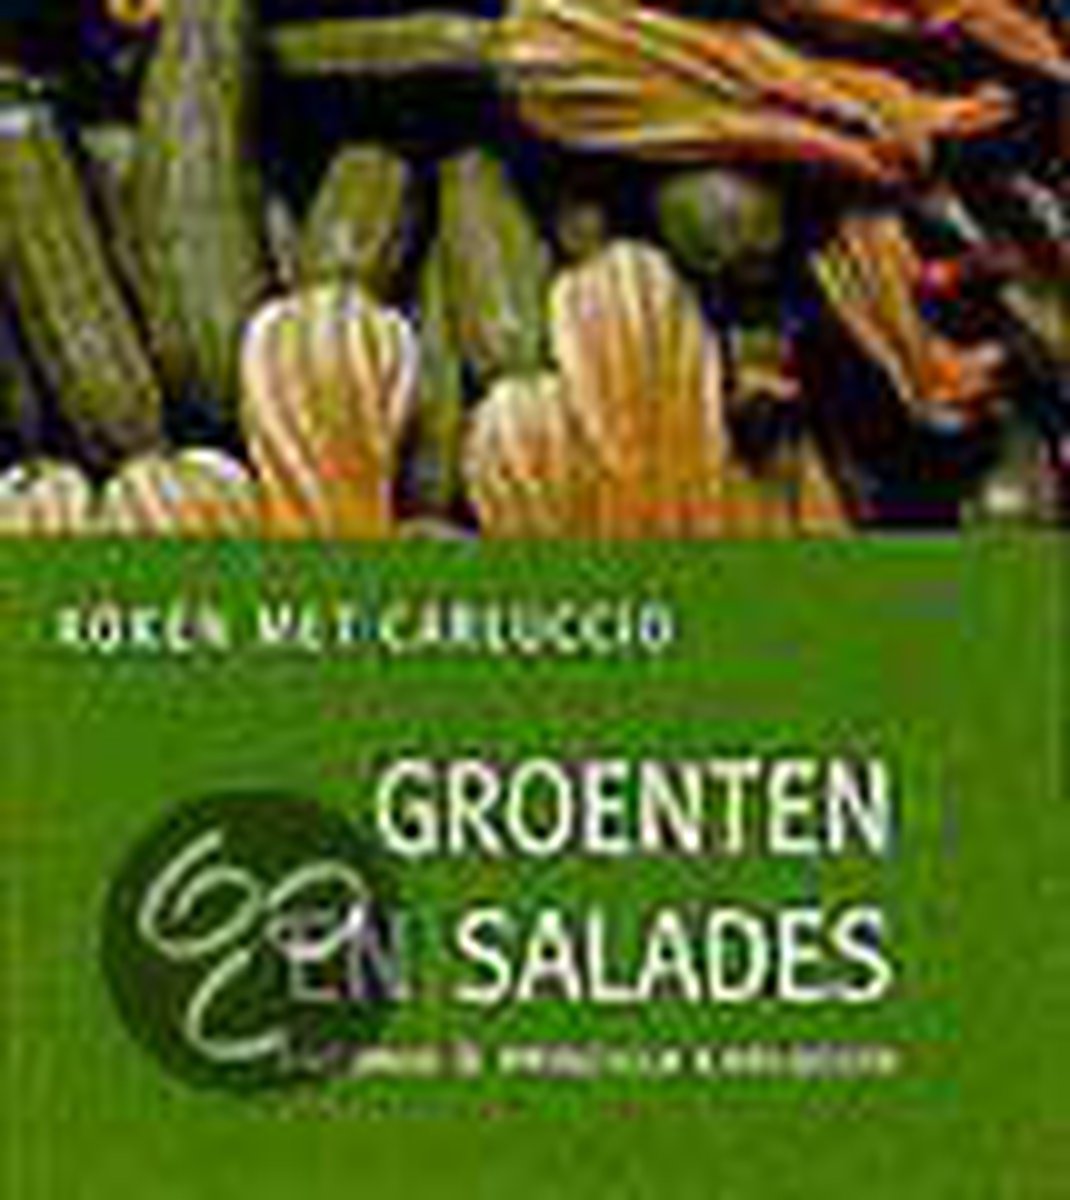 Groenten en salades / Koken met Carluccio